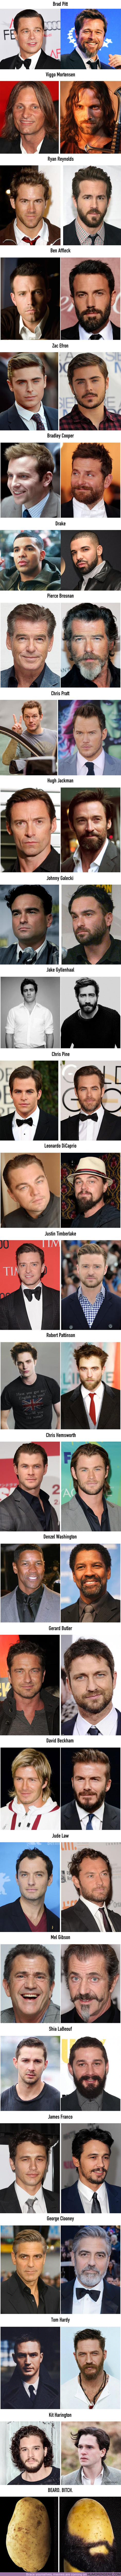 9841 - 28 fotos que demuestran que los hombres están más guapos con barba